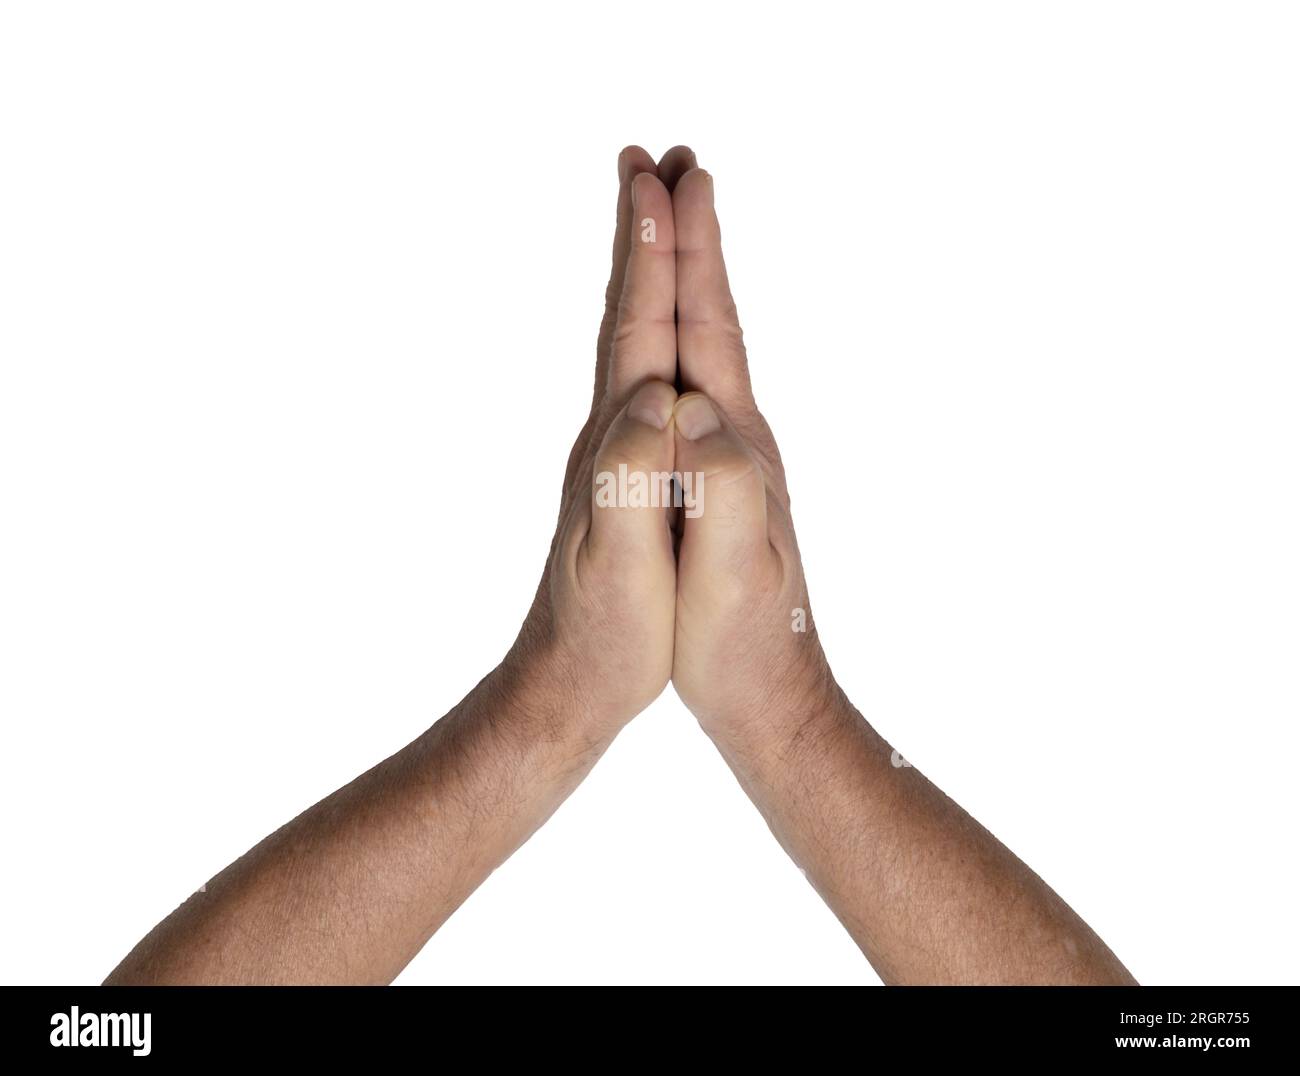 Zusammengefaltete Hände eines Mannes auf transparentem Hintergrund Stockfoto